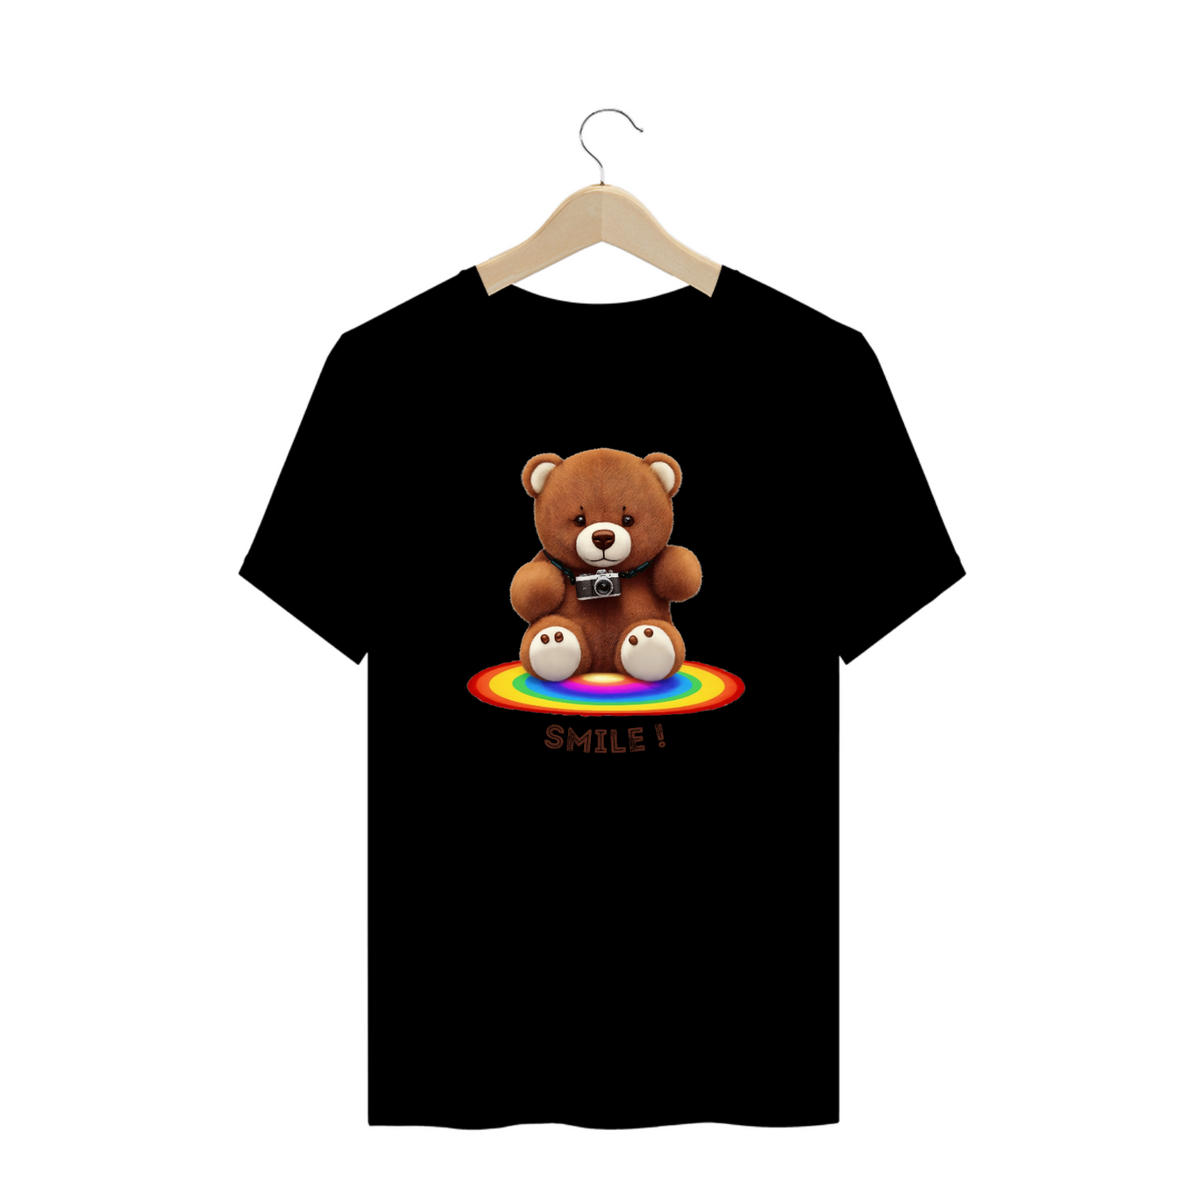 Nome do produto: Teddy Bear Smile - Plus Size